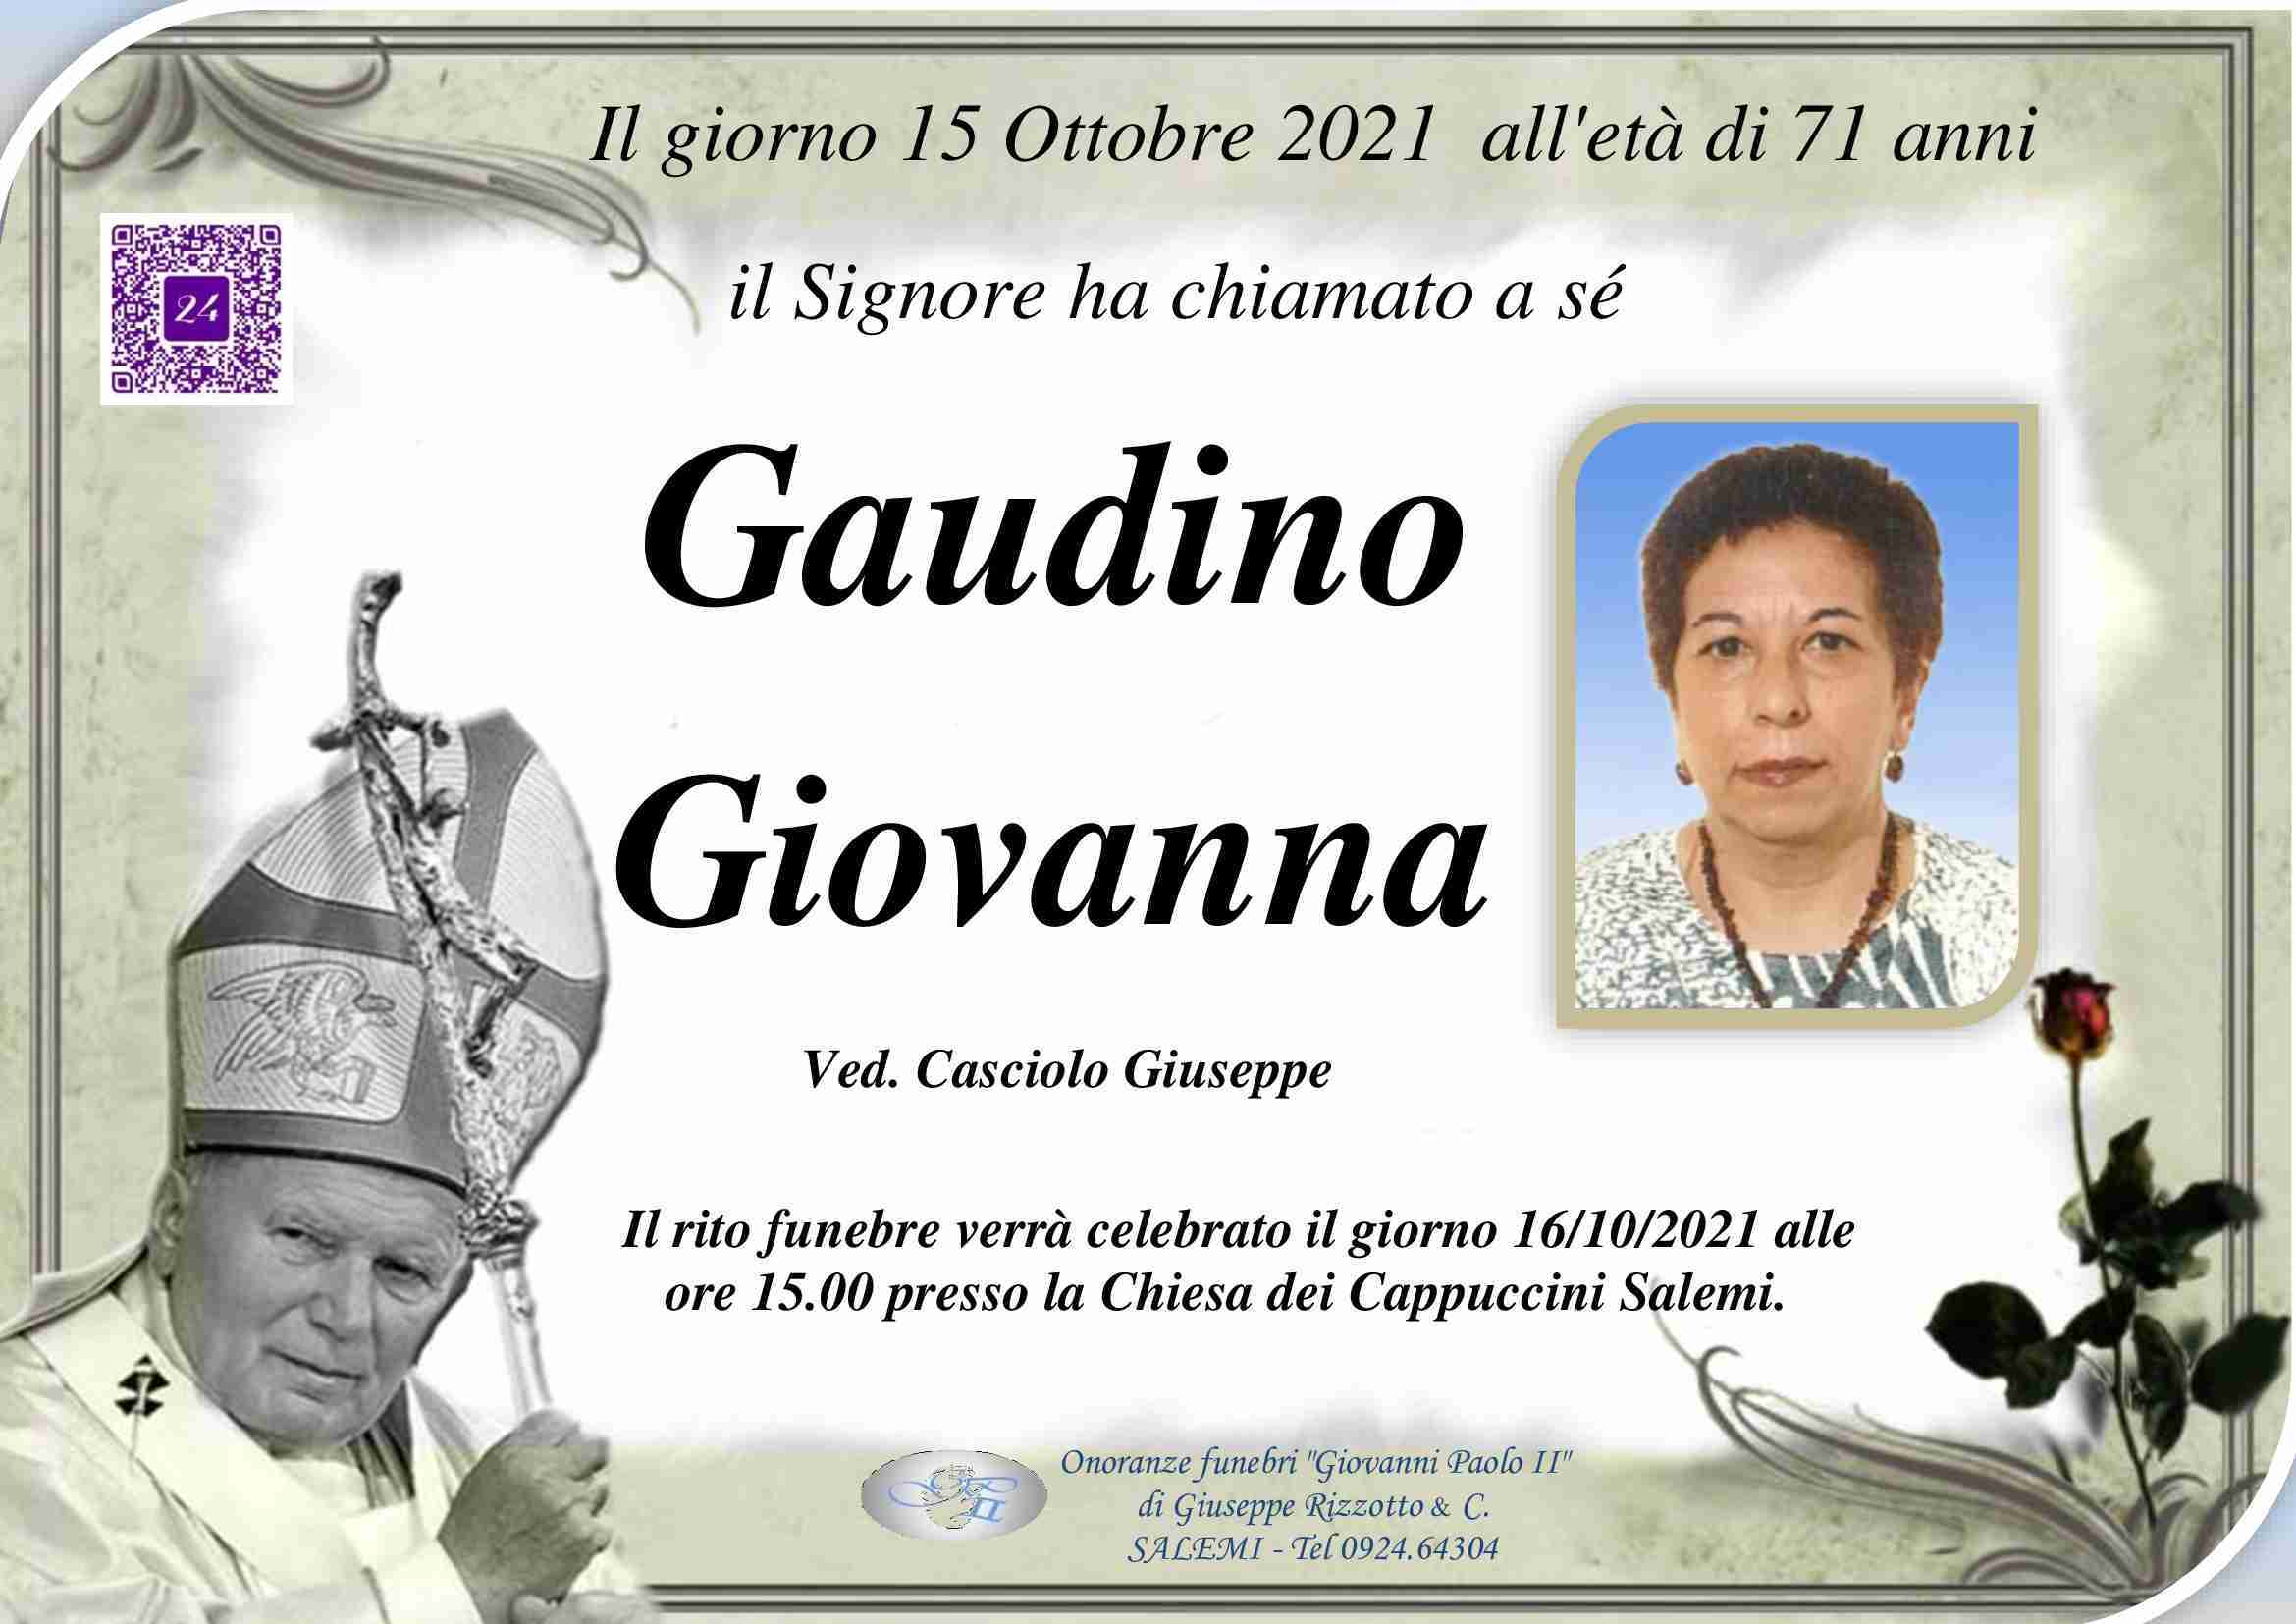 Giovanna Gaudino